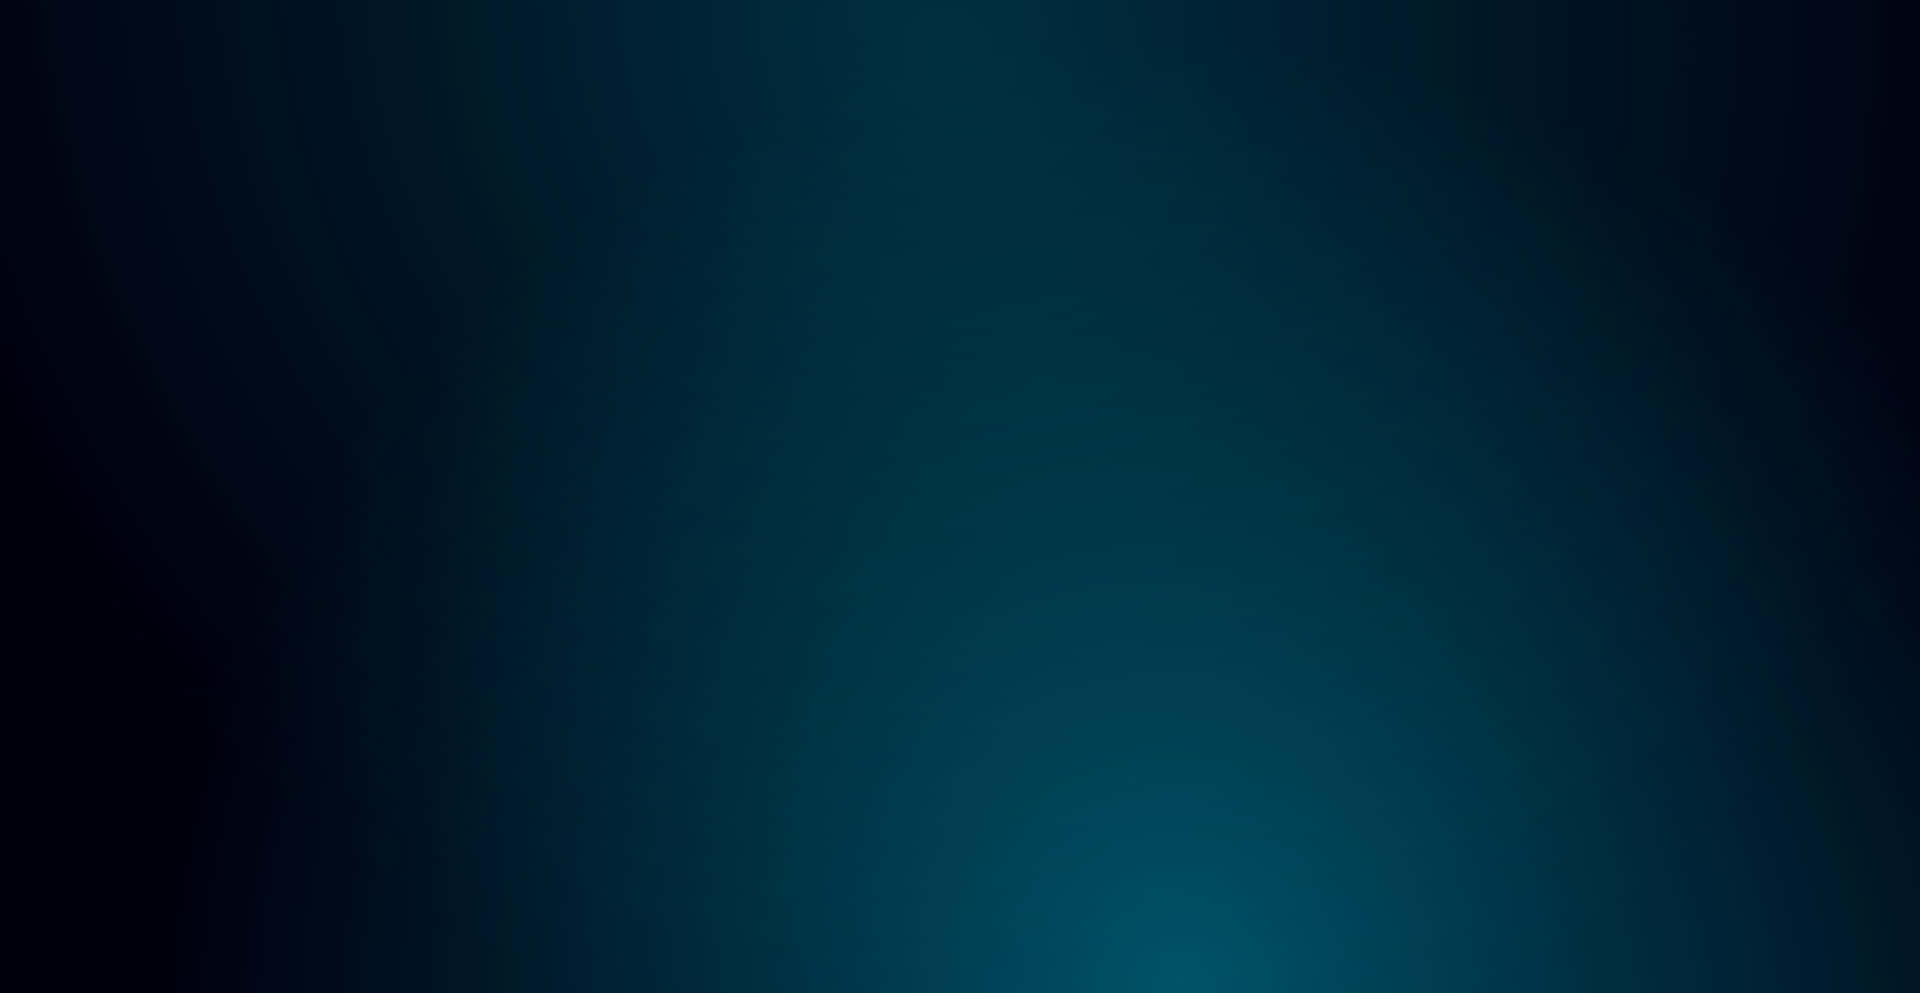 Ombreazul Oscuro: Tonos Dramáticos De Color. Fondo de pantalla